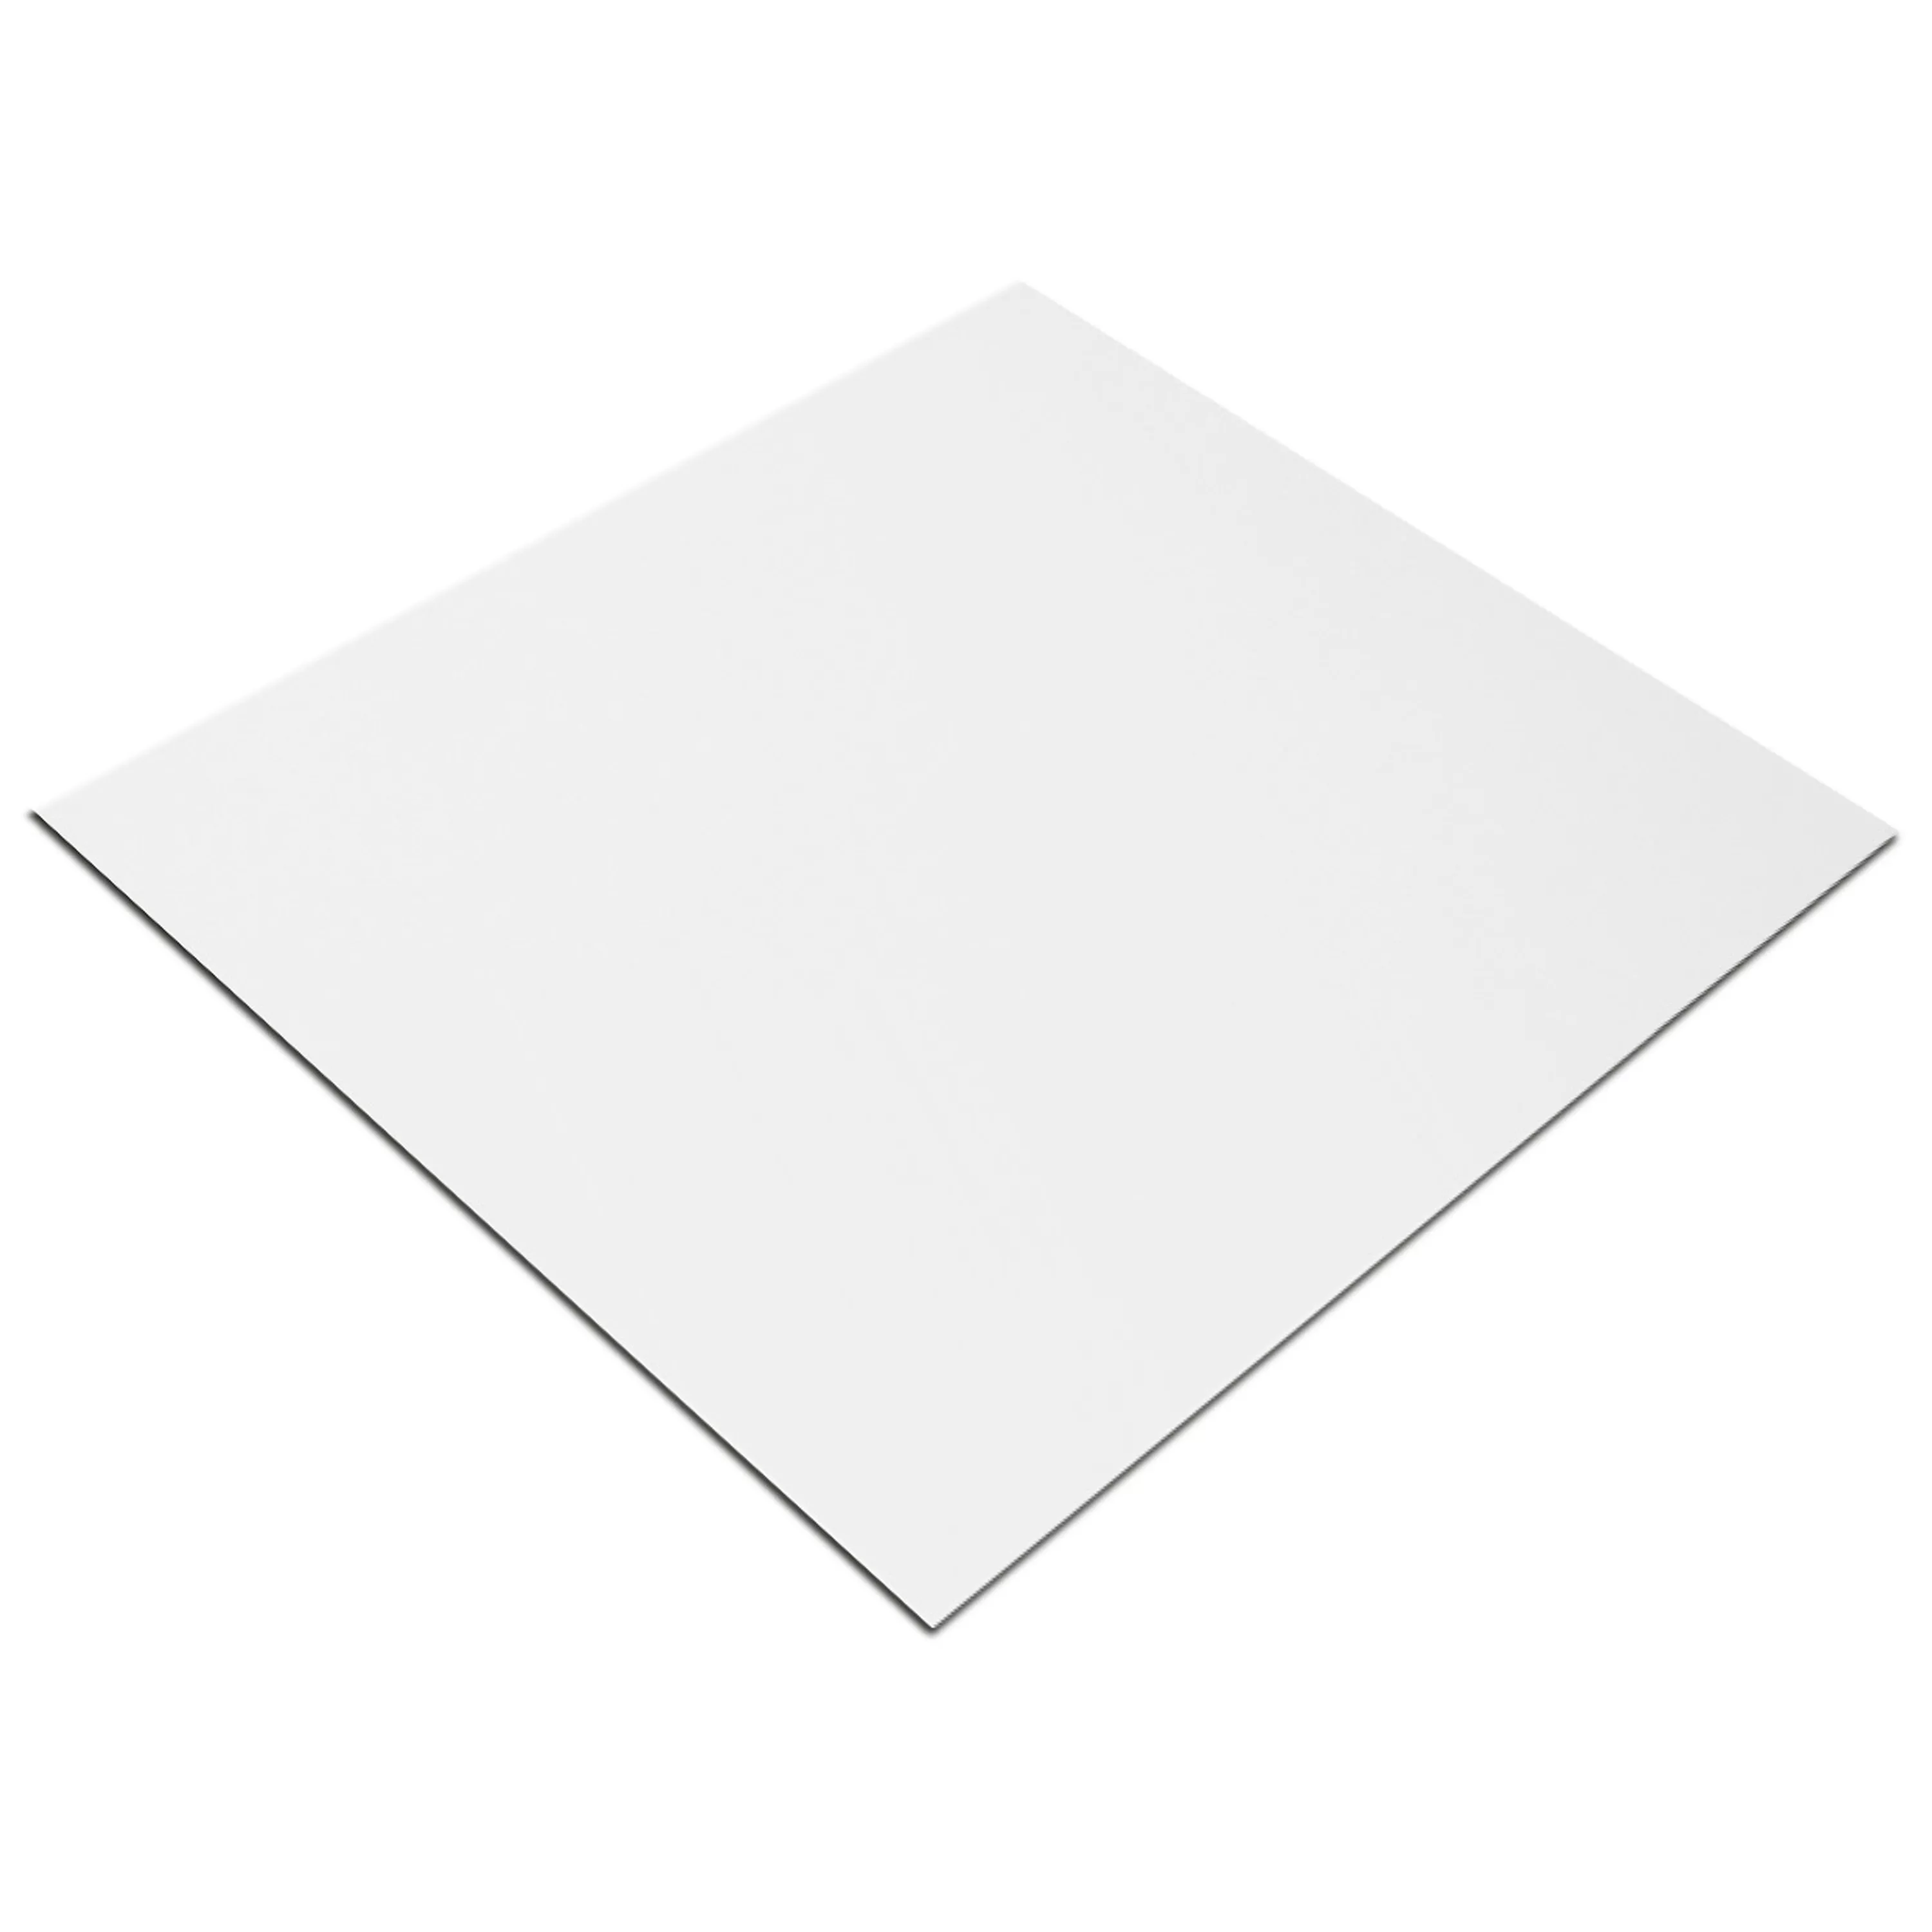 Wall Tiles Fenway White Mat 20x60cm